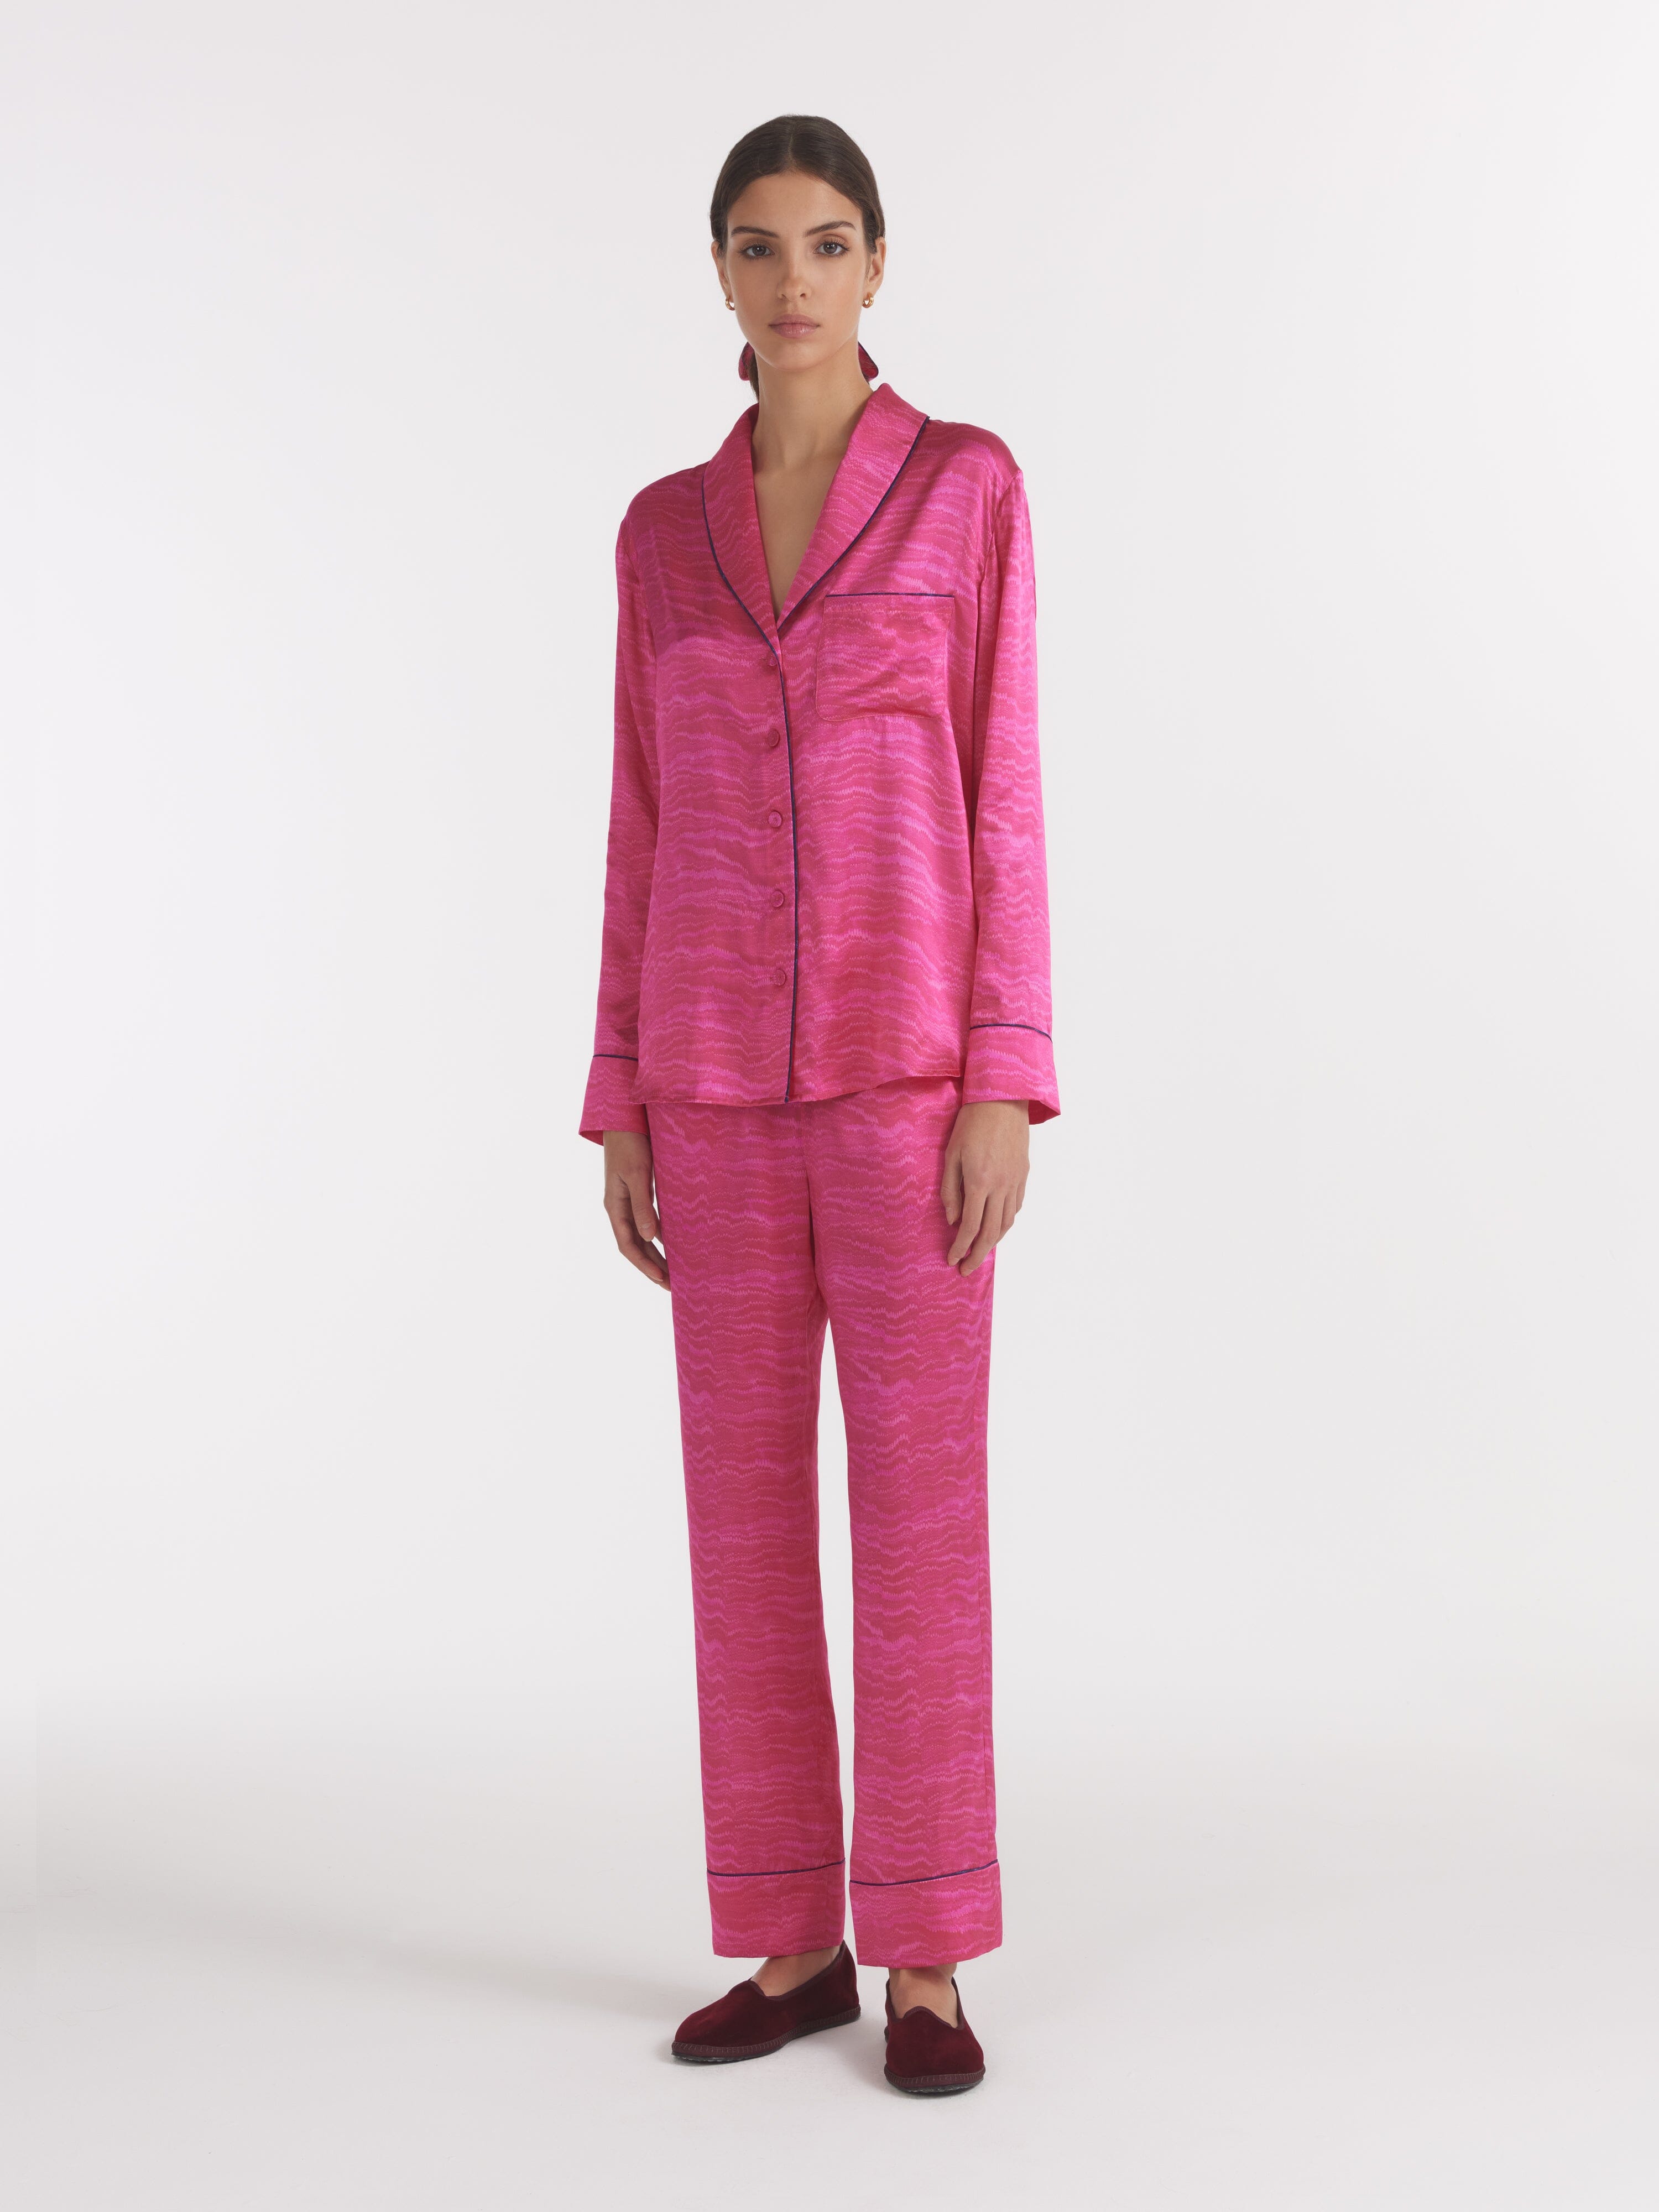 Women's Lounge PJ Set in Pink Marbling